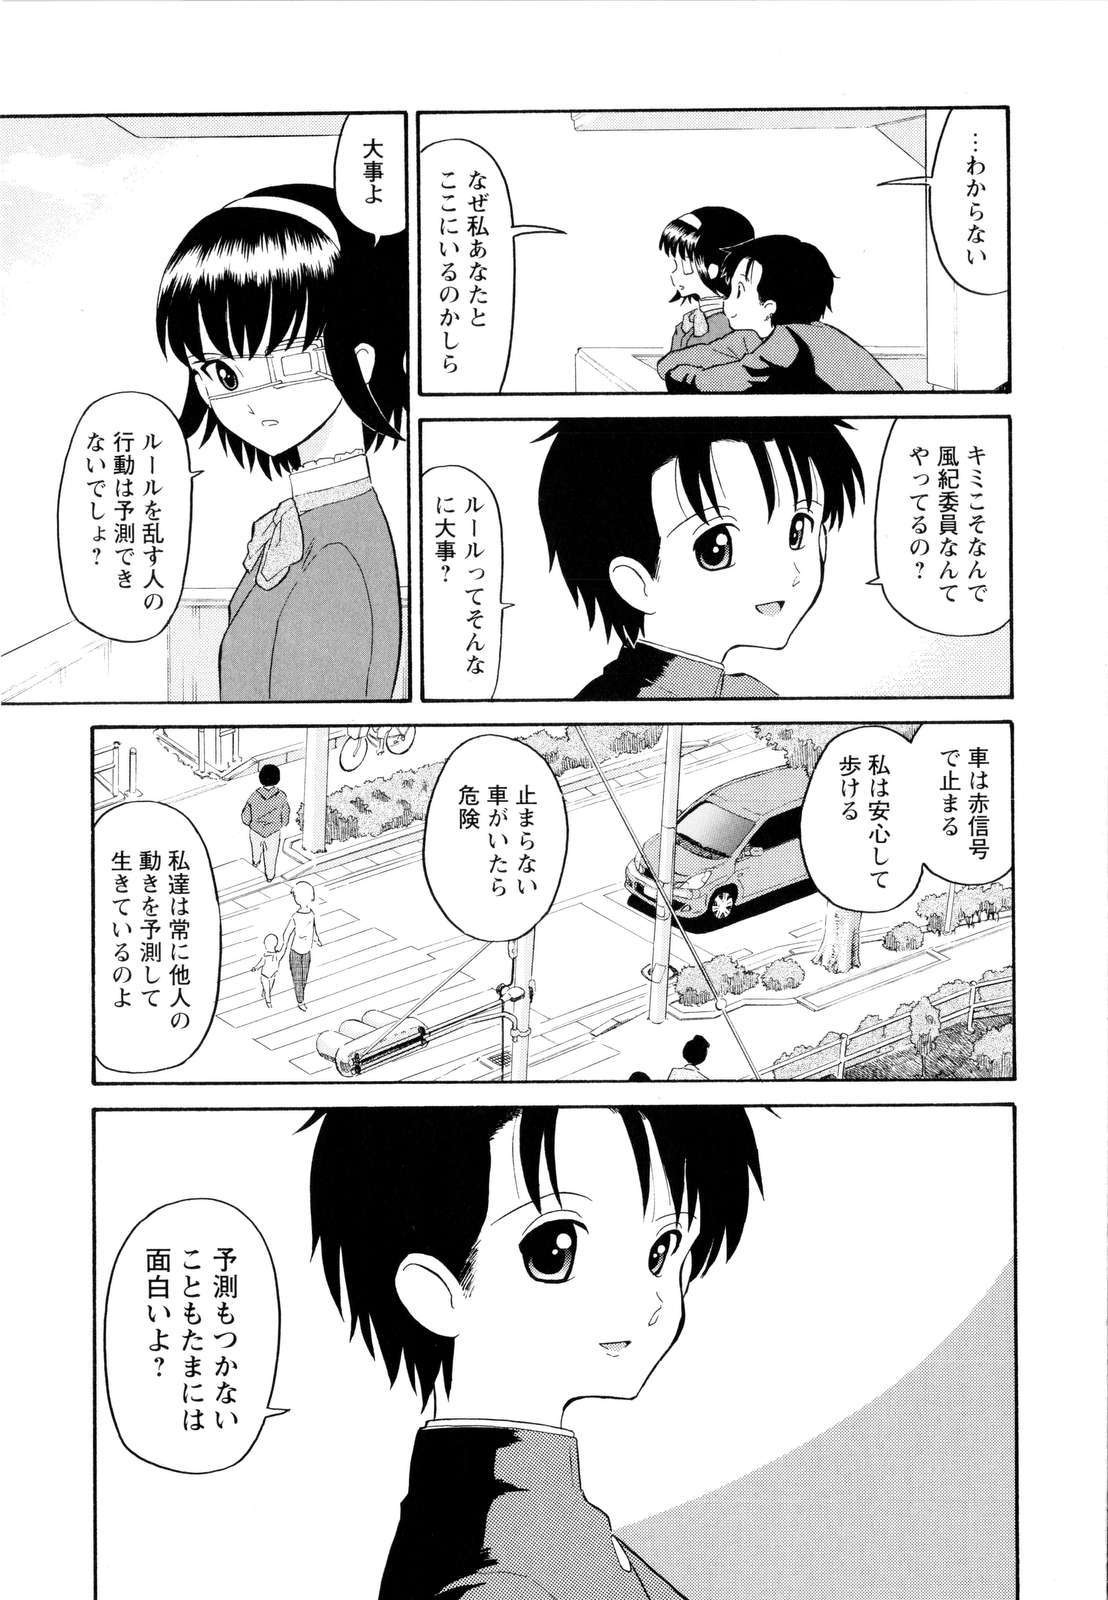 [Dozamura] Haruka 69 Vol.2 page 18 full